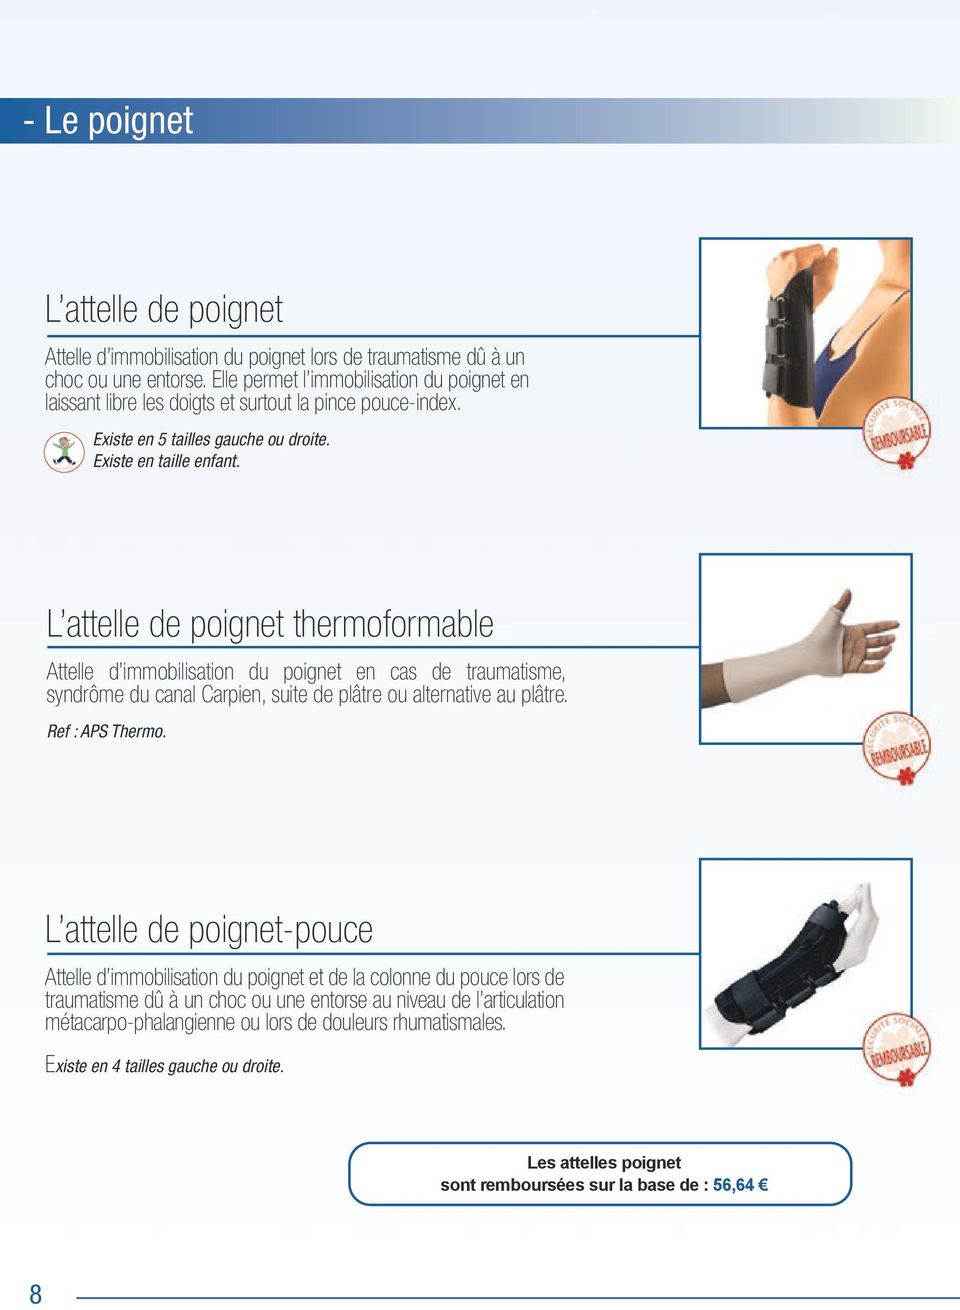 L attelle de poignet thermoformable Attelle d immobilisation du poignet en cas de traumatisme, syndrôme du canal Carpien, suite de plâtre ou alternative au plâtre. Ref : APS Thermo.